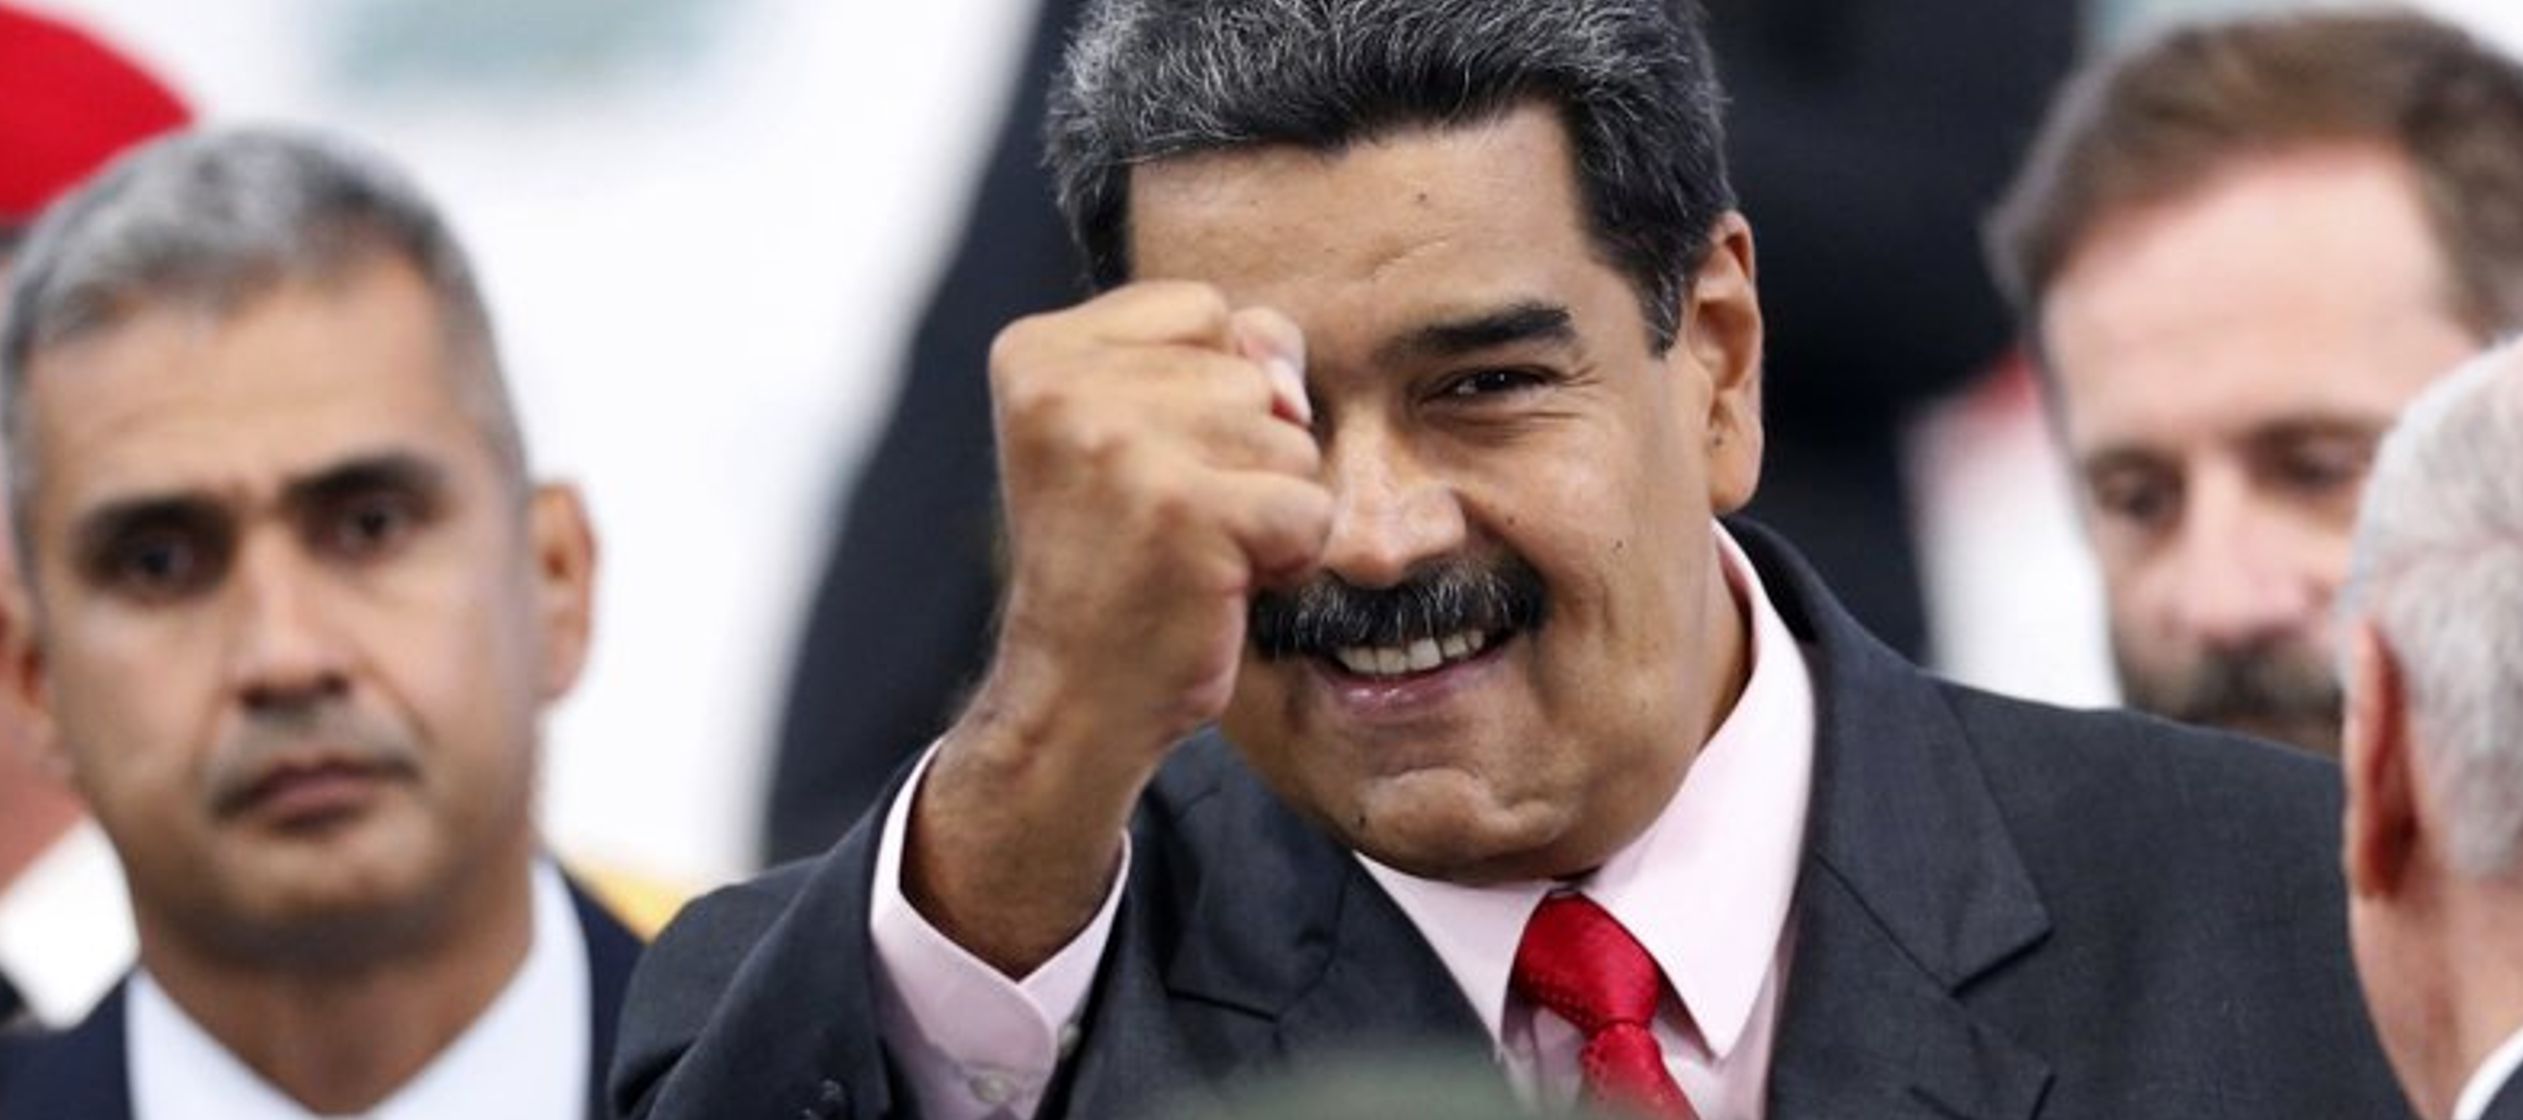 Al respecto, la cancillería venezolana rechazó de manera categórica el...